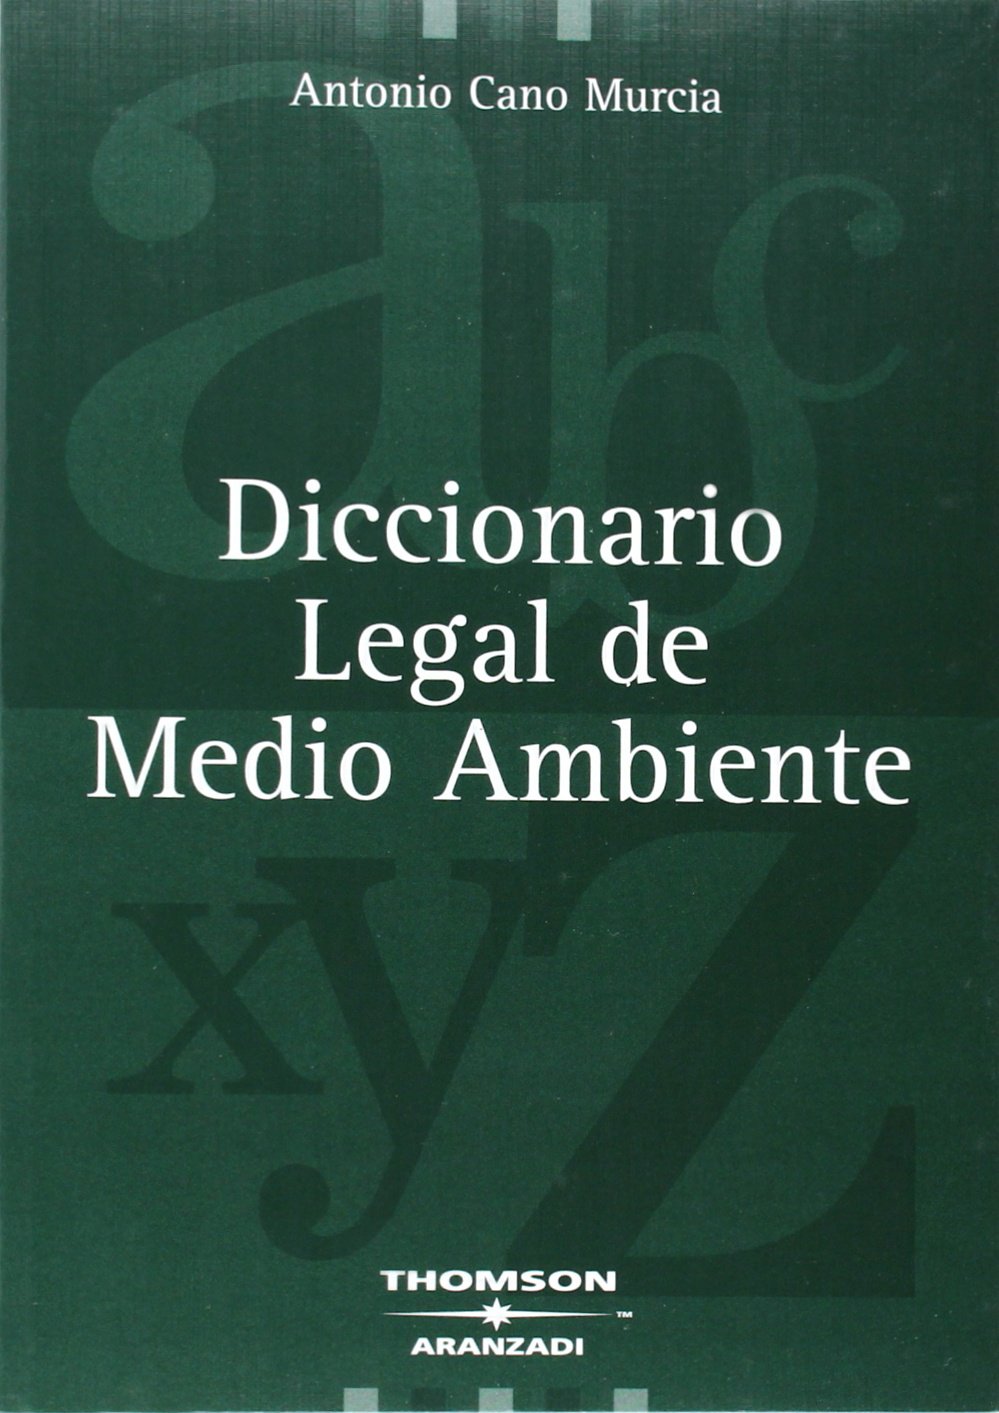 Diccionario legal de Medio Ambiente